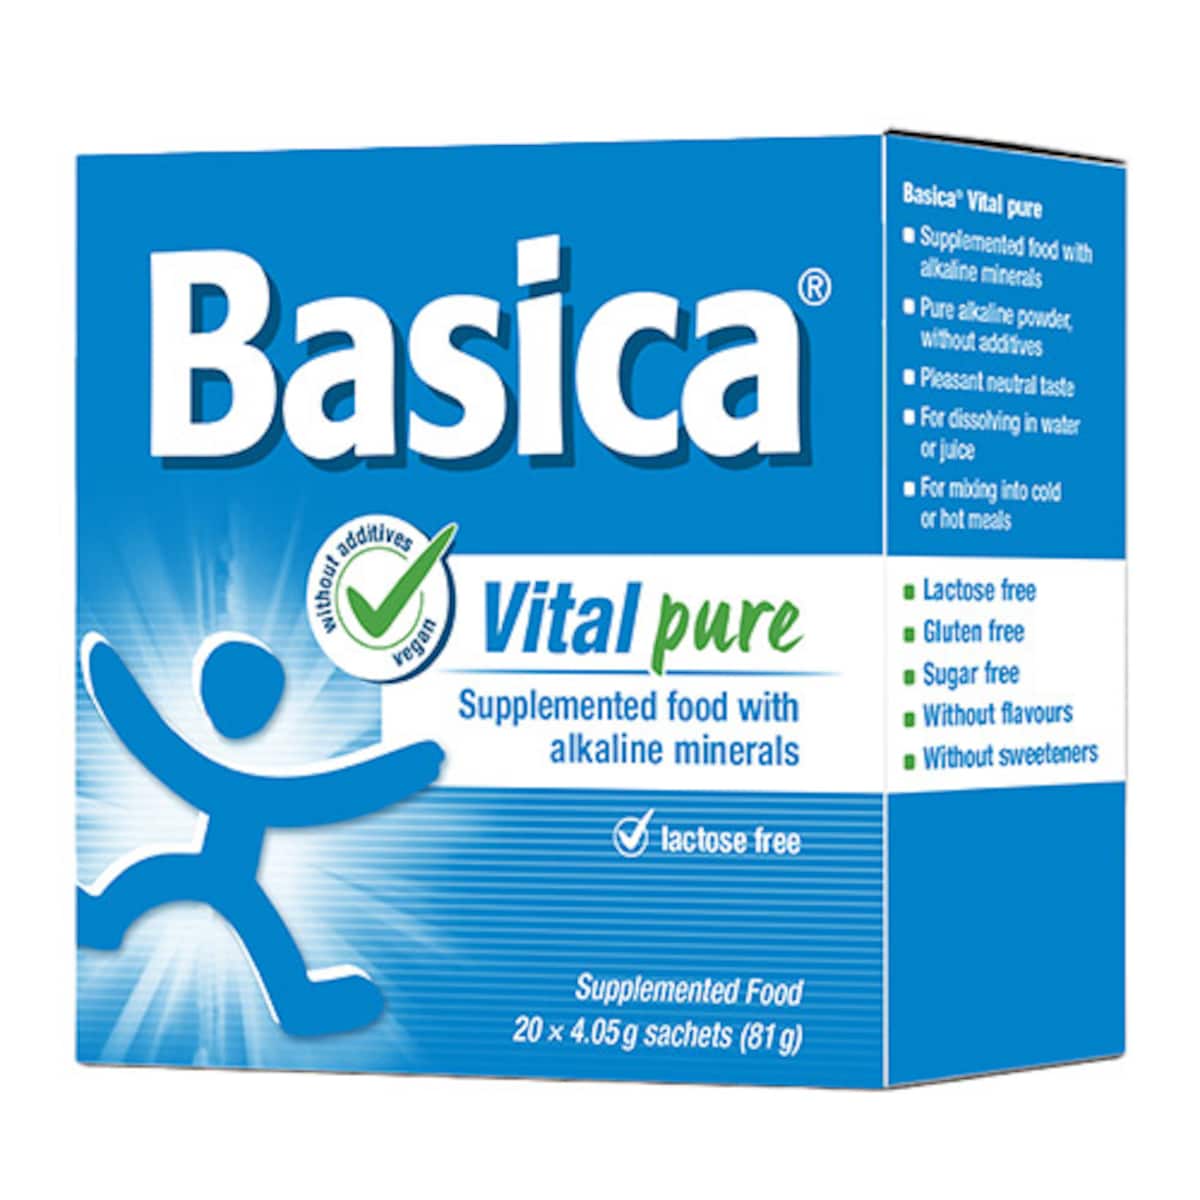 Bio-Practica Basica Vital Pure 4.05g x 20 Sachets